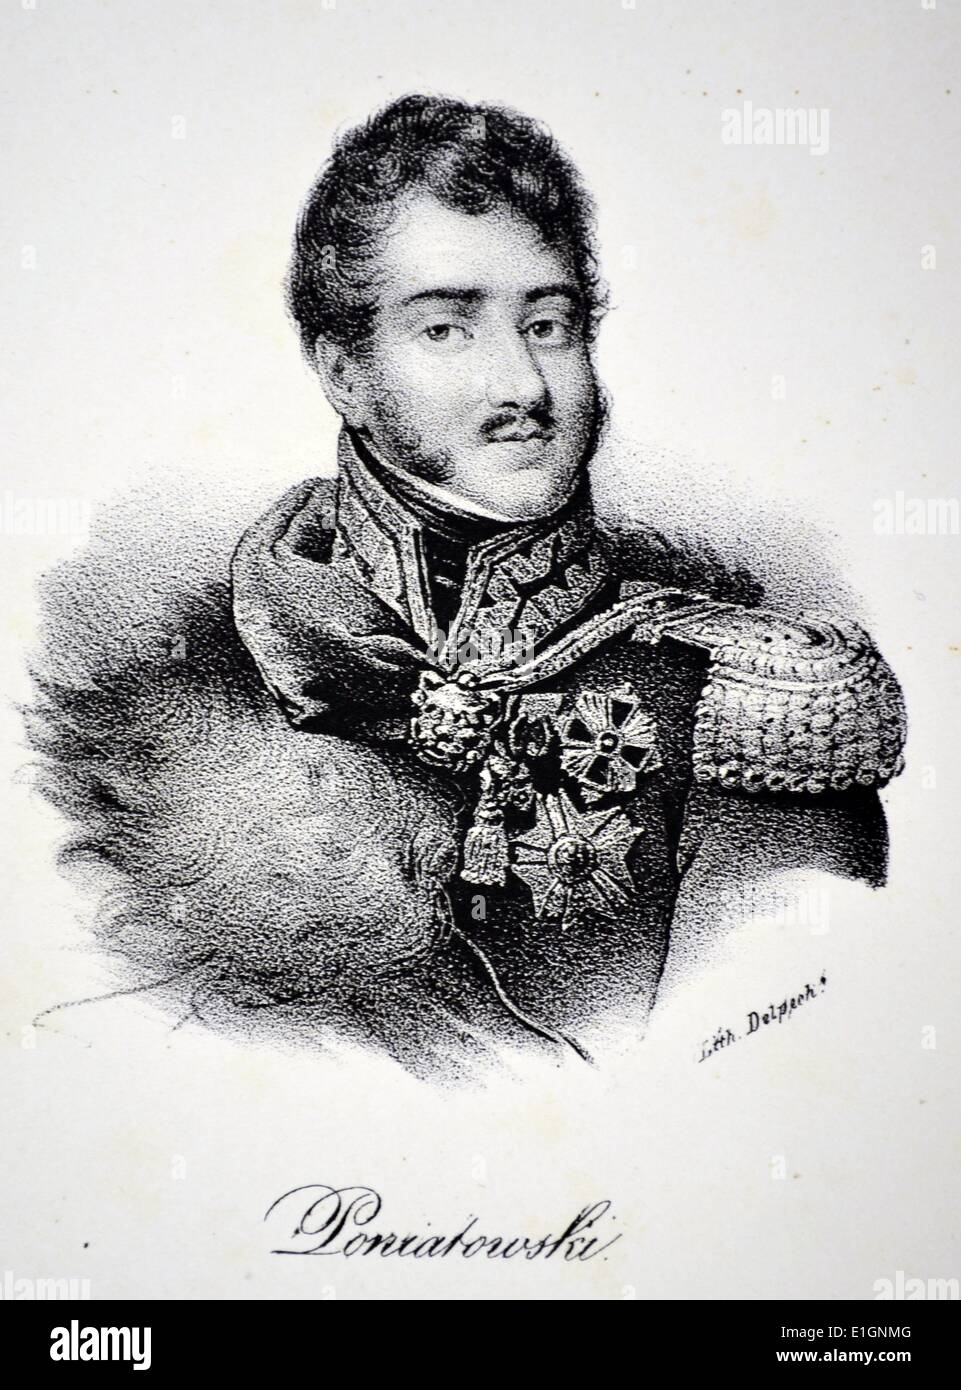 Prince Jozef Poniatowski (1763-1813) leader polonais et général. Se sont battus pour Napoléon sur sa campagne de Russie. Créé Maréchal de France pendant la bataille de Leipzig, en octobre 1813, au cours de laquelle il est mort. Lithographie, 5104-c, Paris. Banque D'Images